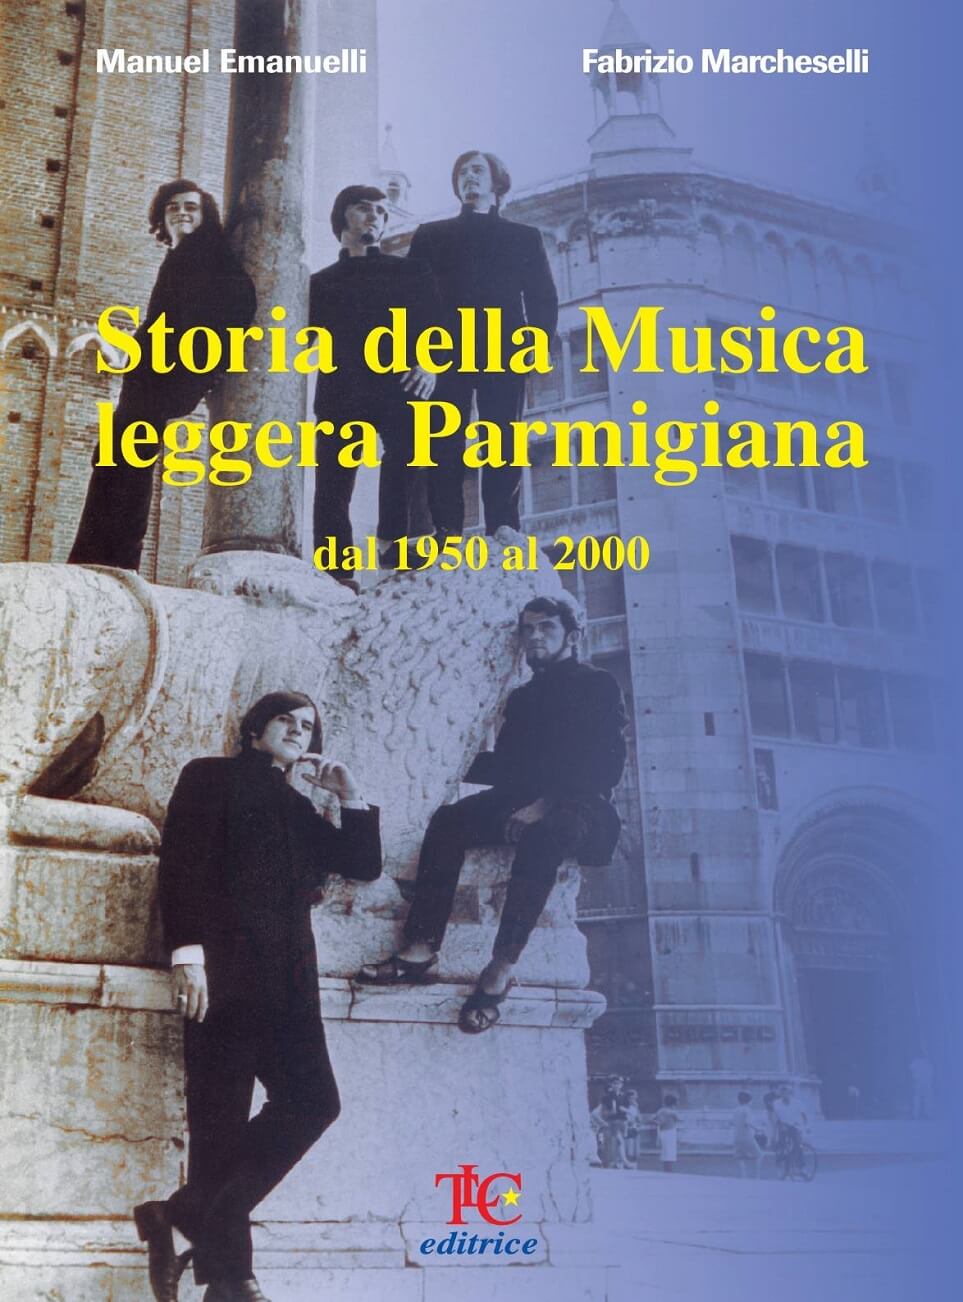 «Storia della Musica leggera Parmigiana - dal 1950 al 2000»